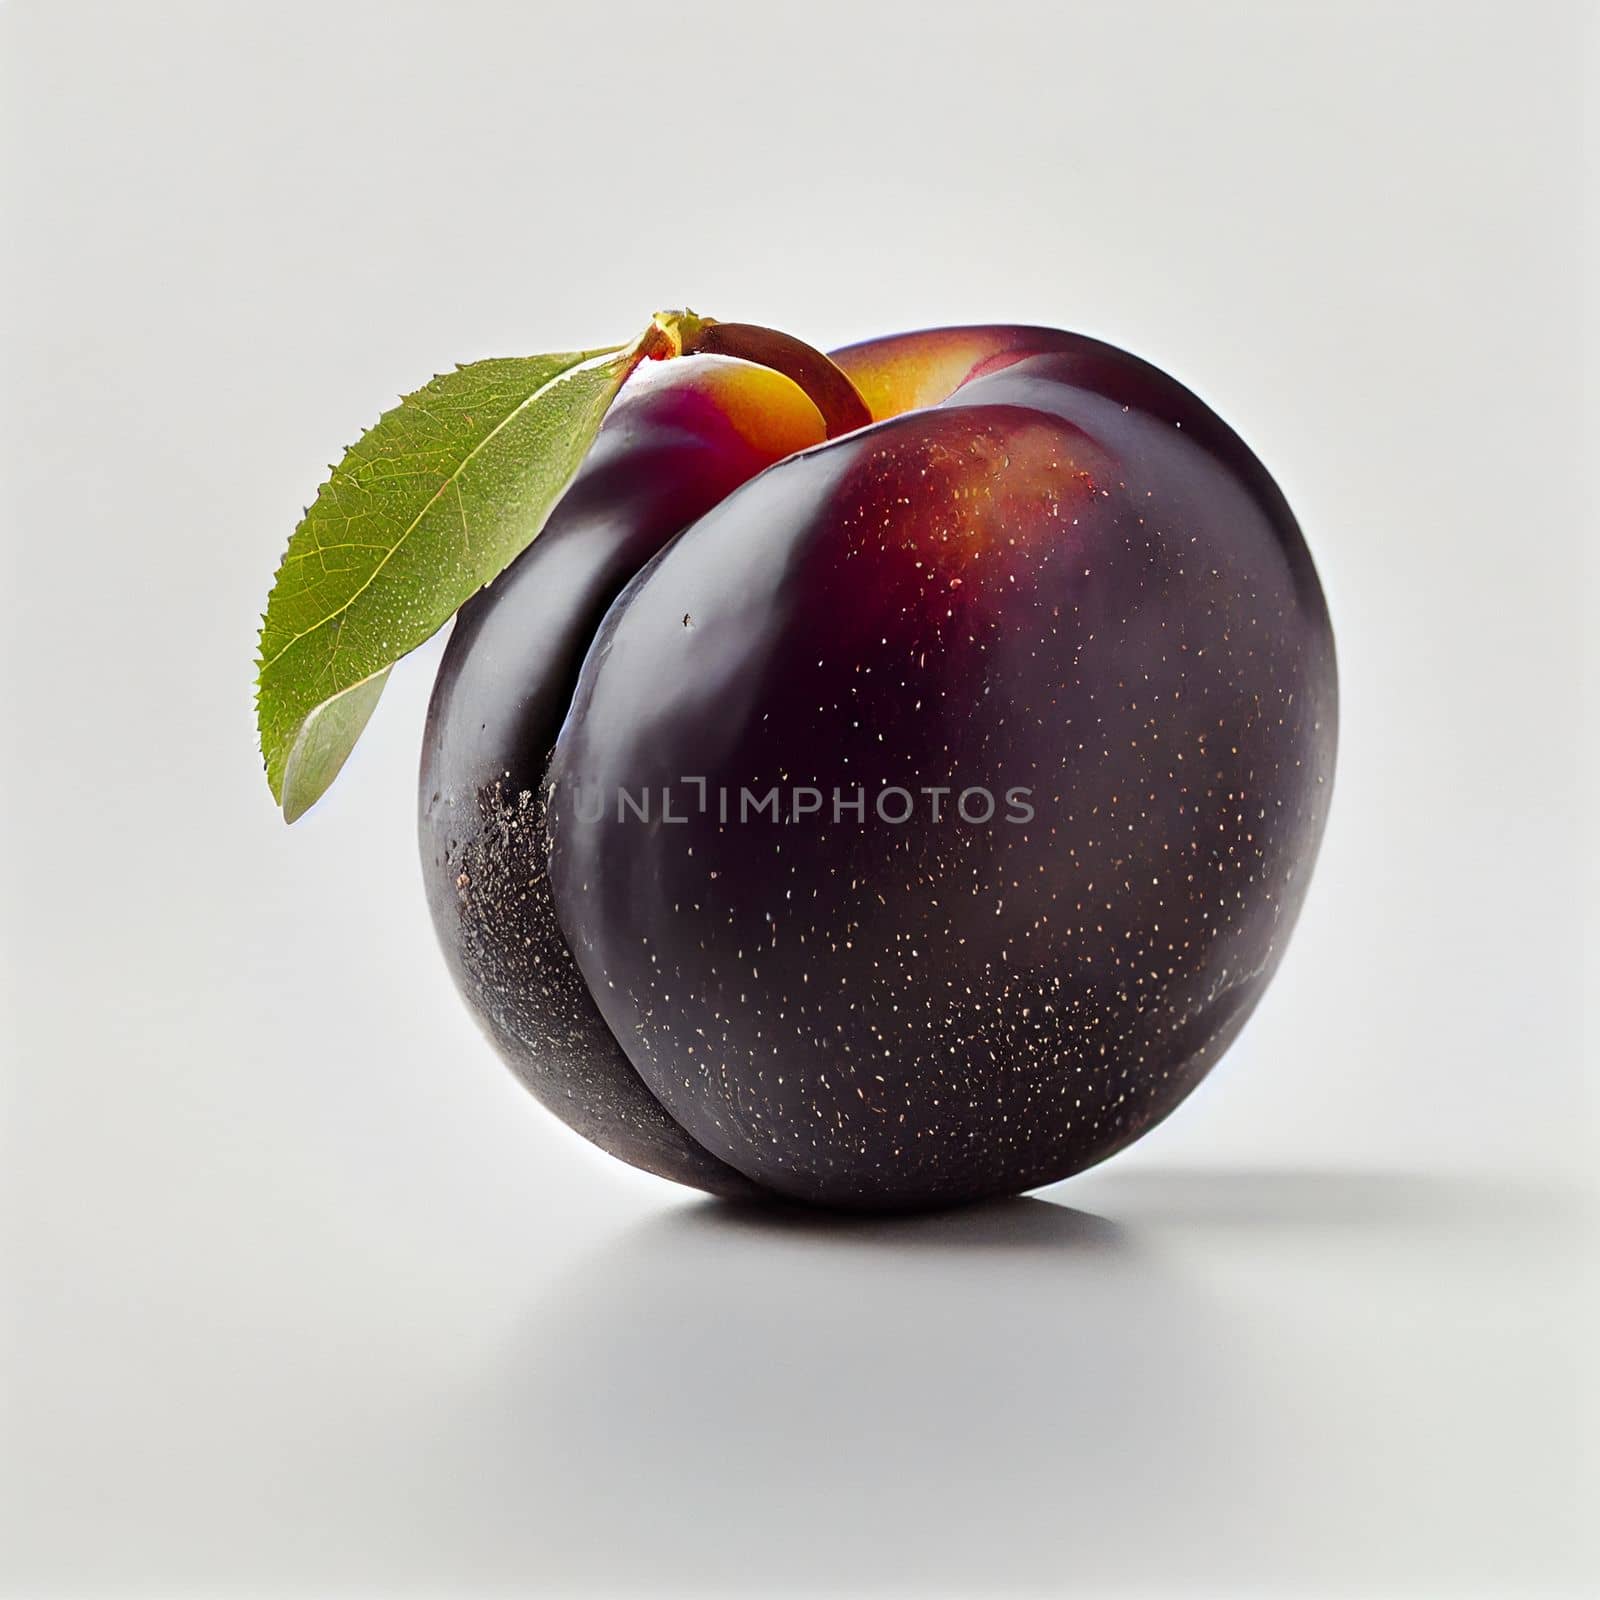 Plum fruit isolated on white background.